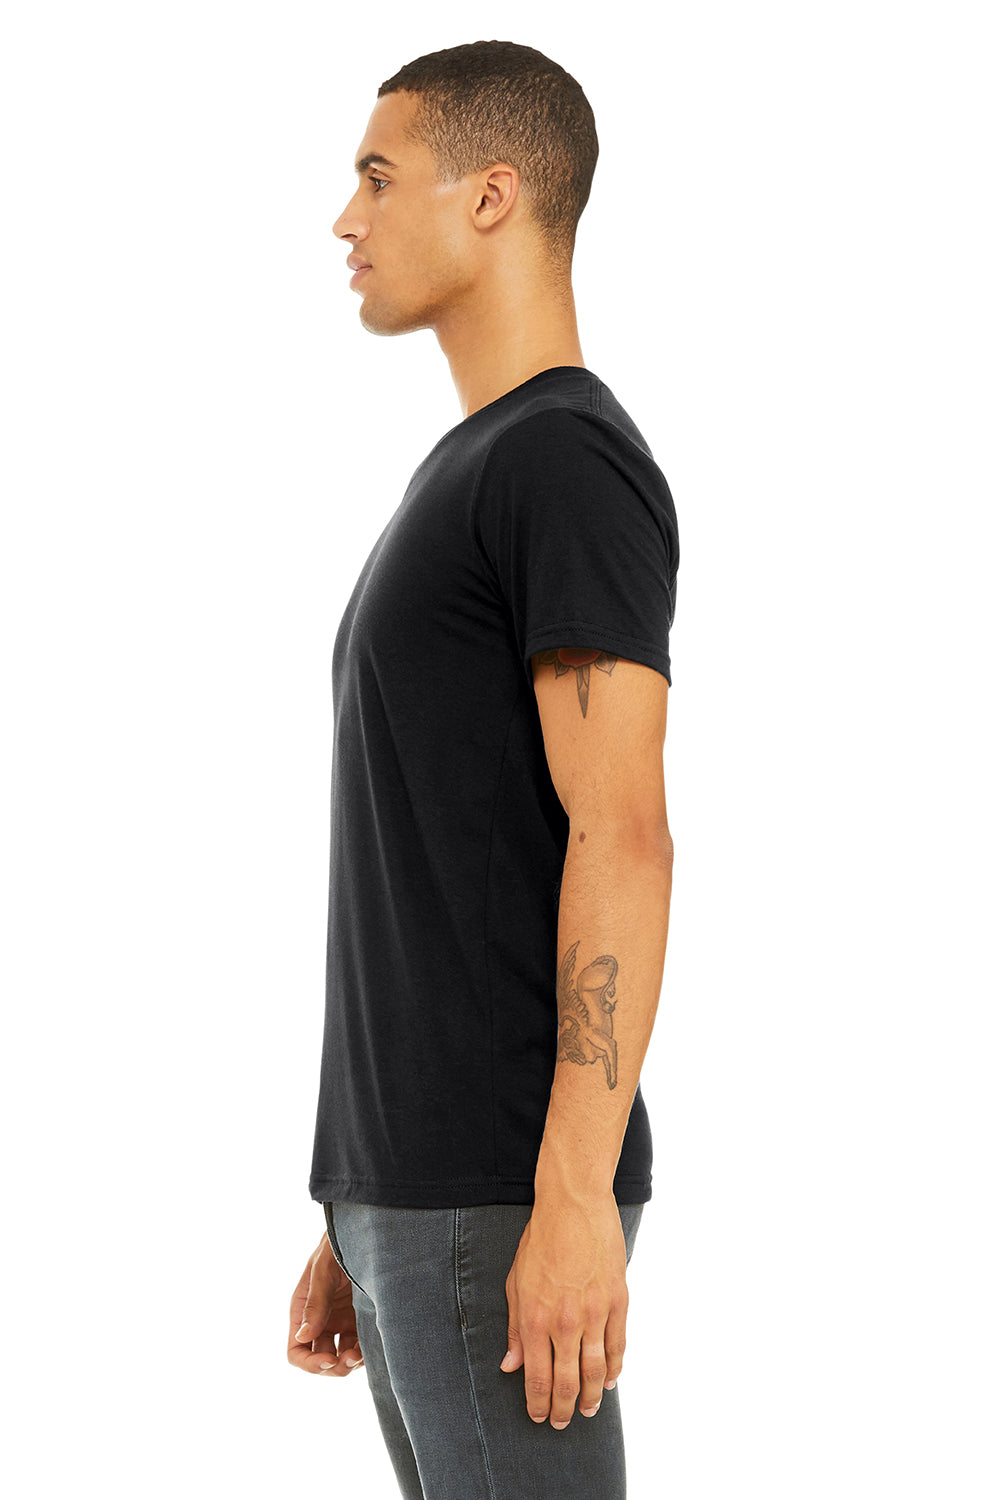 Bella + Canvas BC3415/3415C/3415 Mens Short Sleeve V-Neck T-Shirt Solid Black Model Side